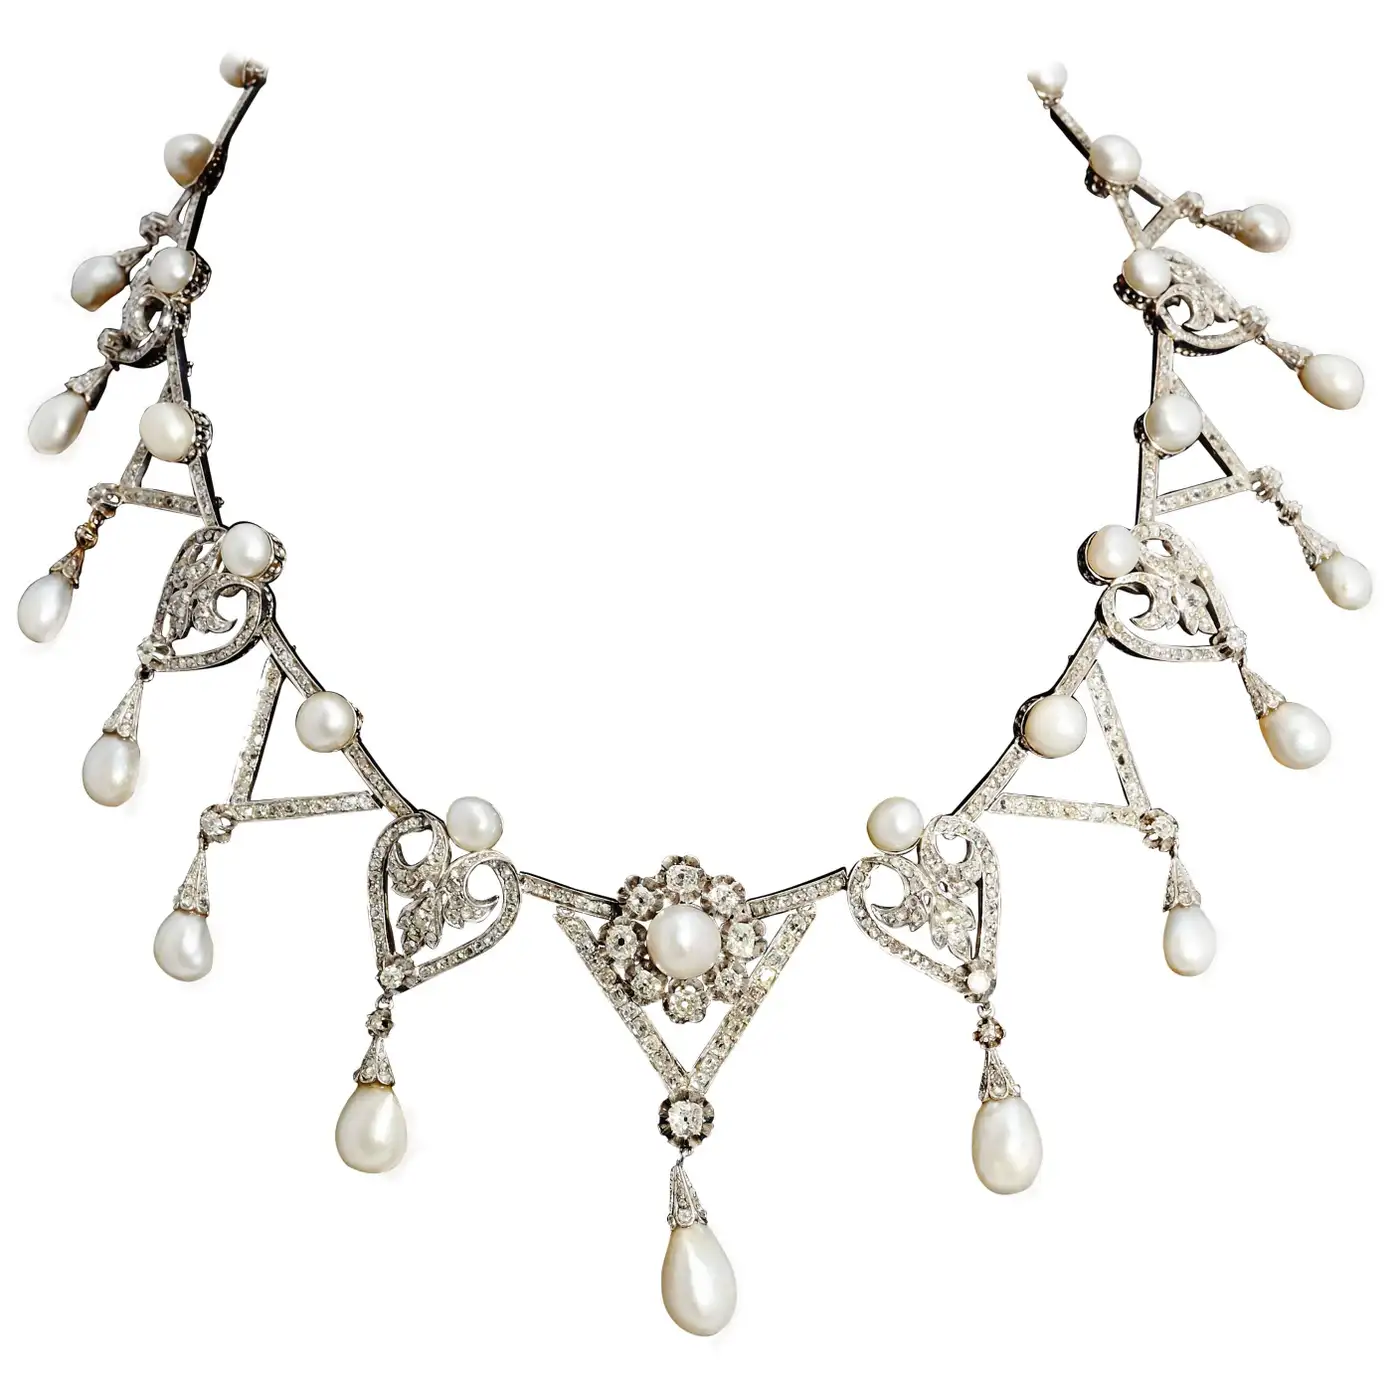 1910s-Important-Antique-Natural-Pearl-Diamond-Platinum-Necklace-1.webp